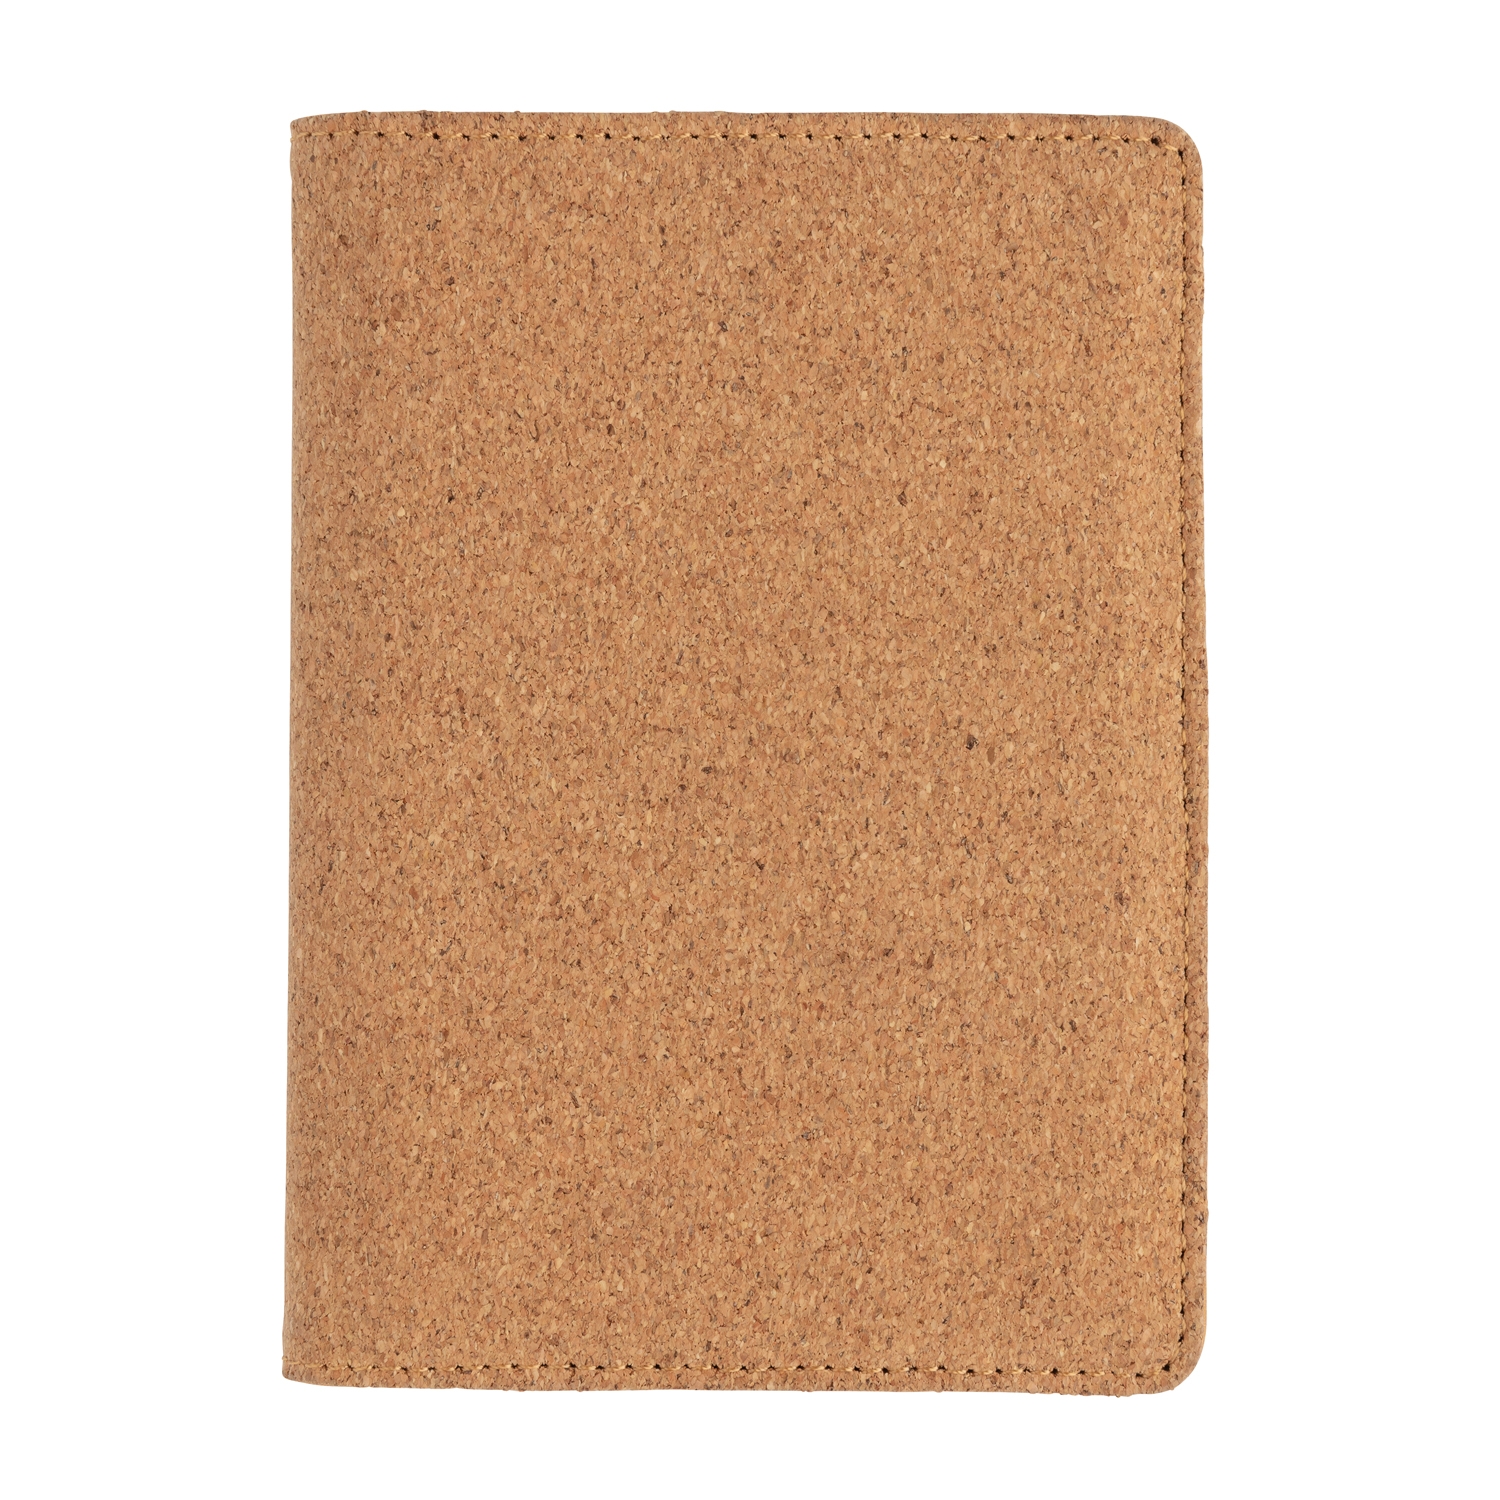 Эко-обложка для паспорта Cork  с RFID защитой, коричневый, пробка; polyurethane